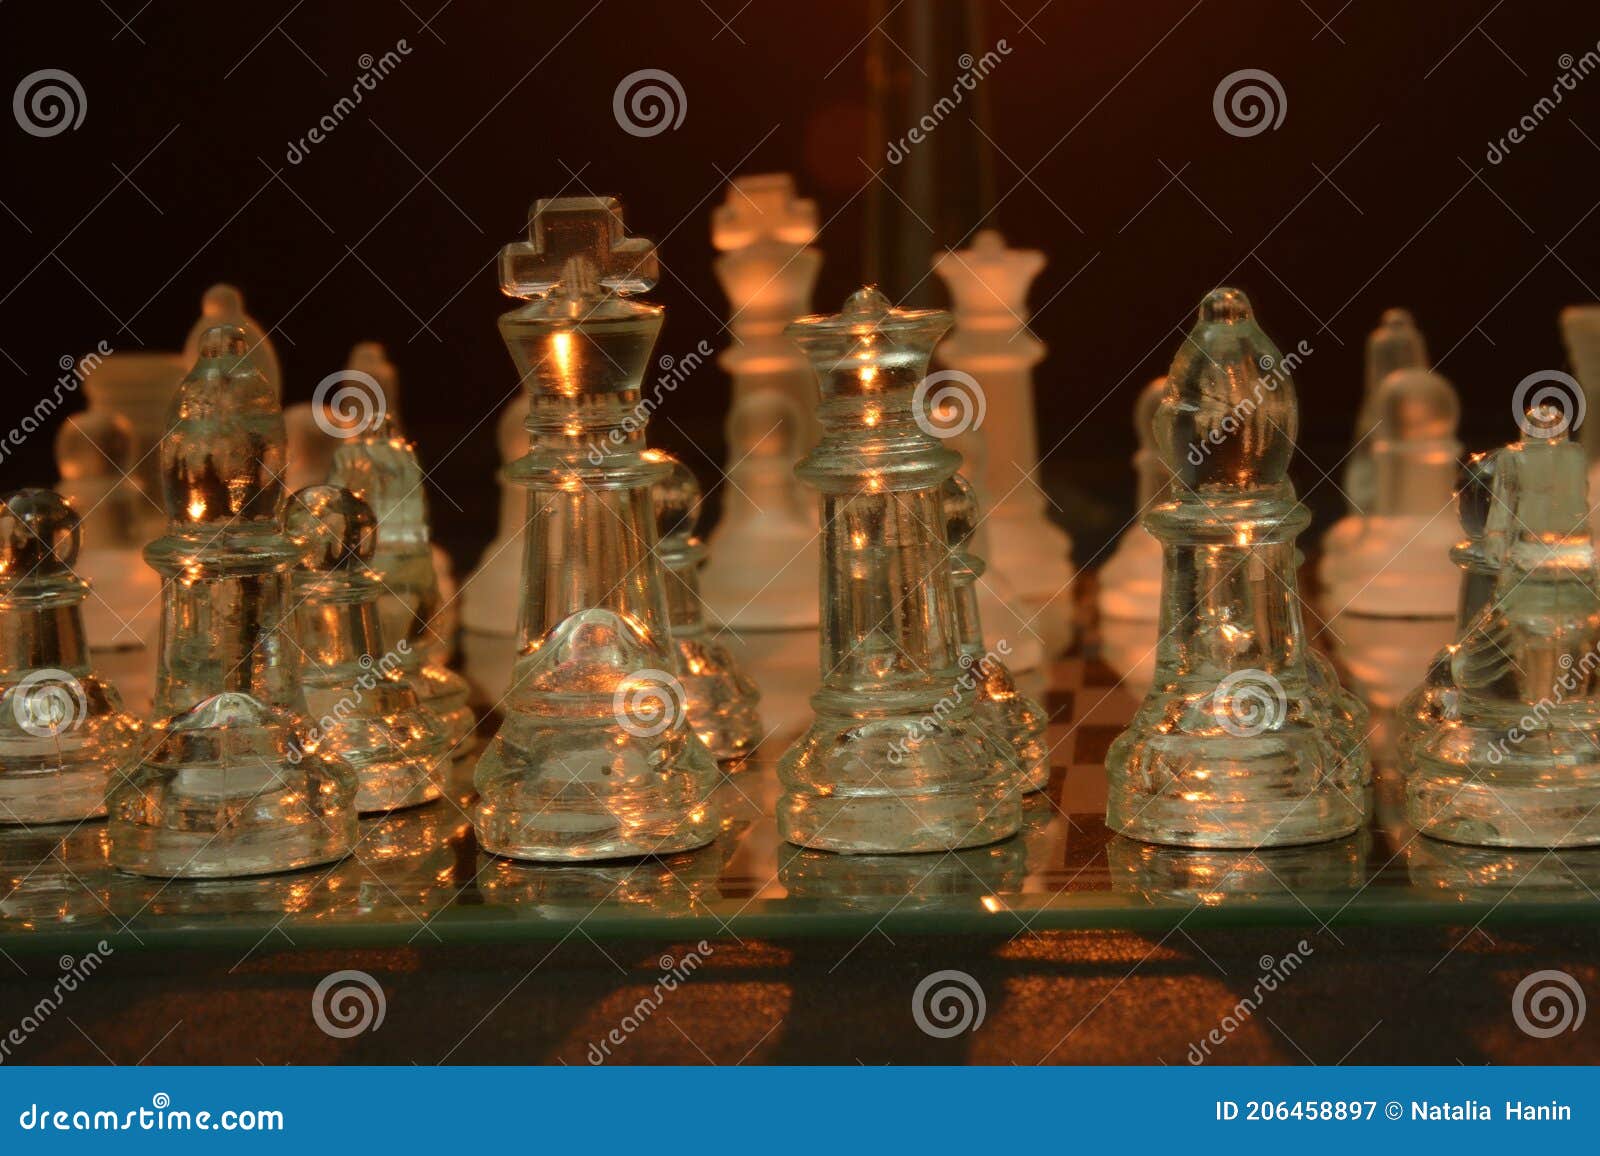 Um tabuleiro de xadrez com tampo de vidro transparente e a palavra xadrez